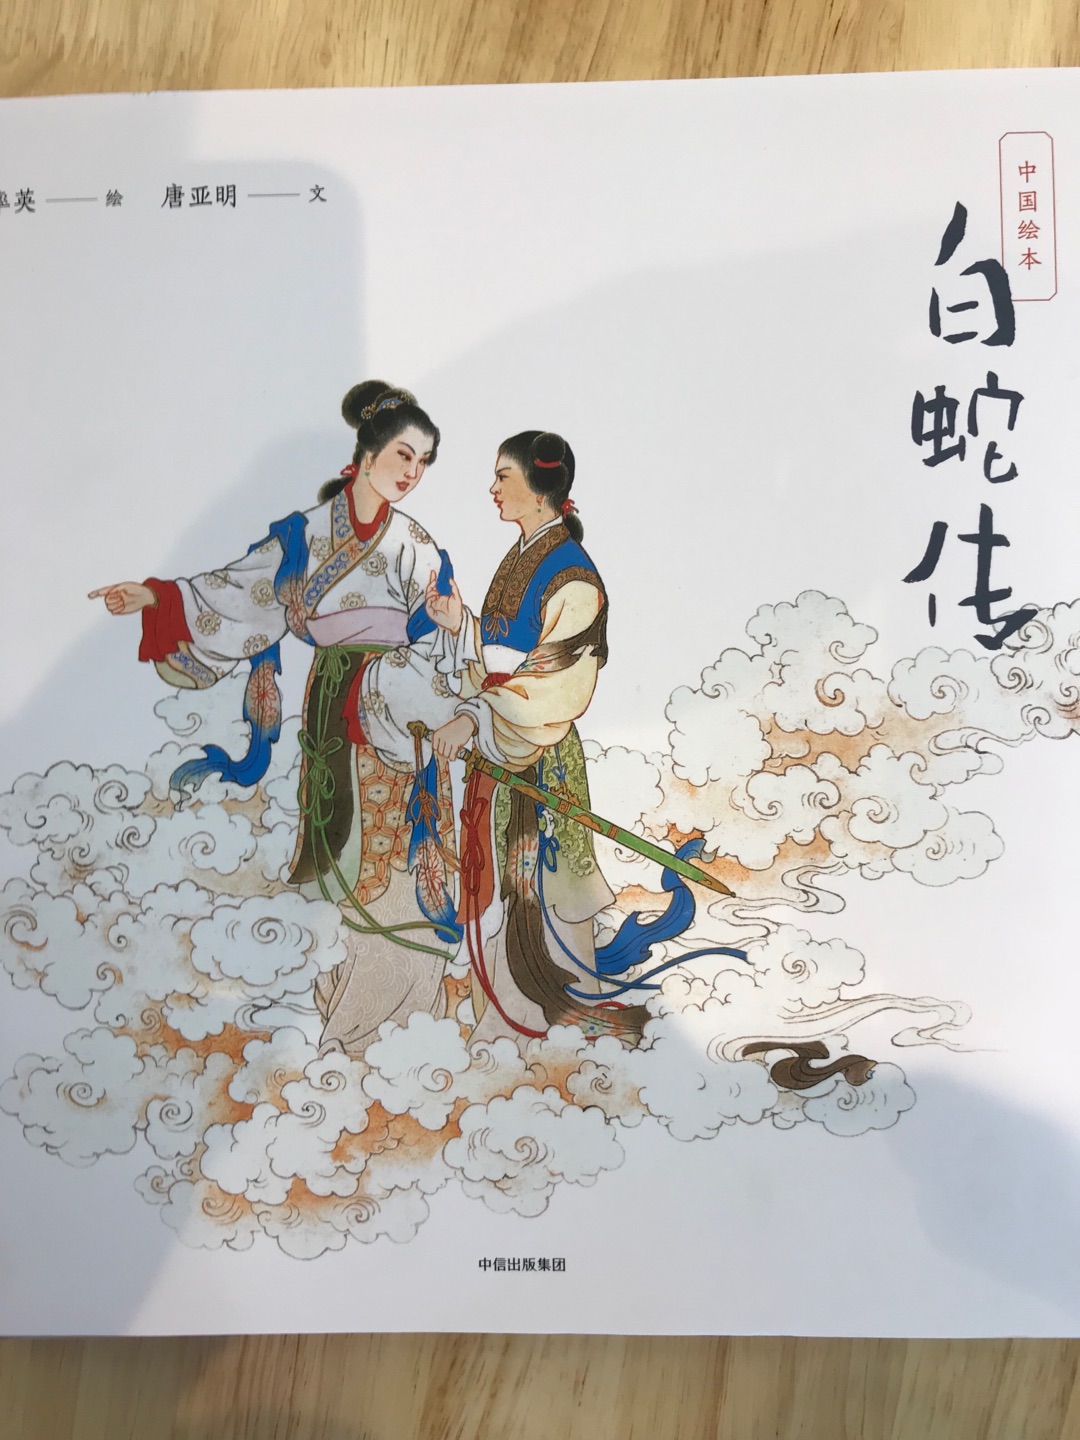 收到书眼前一亮，浓浓的中国风啊，现在遍地都是国外绘本的天下，这几本简直是绘本界的一股清流，中国的经典故事，国画的艺术风格～起码让孩子了解下咱自己的文化～很好！